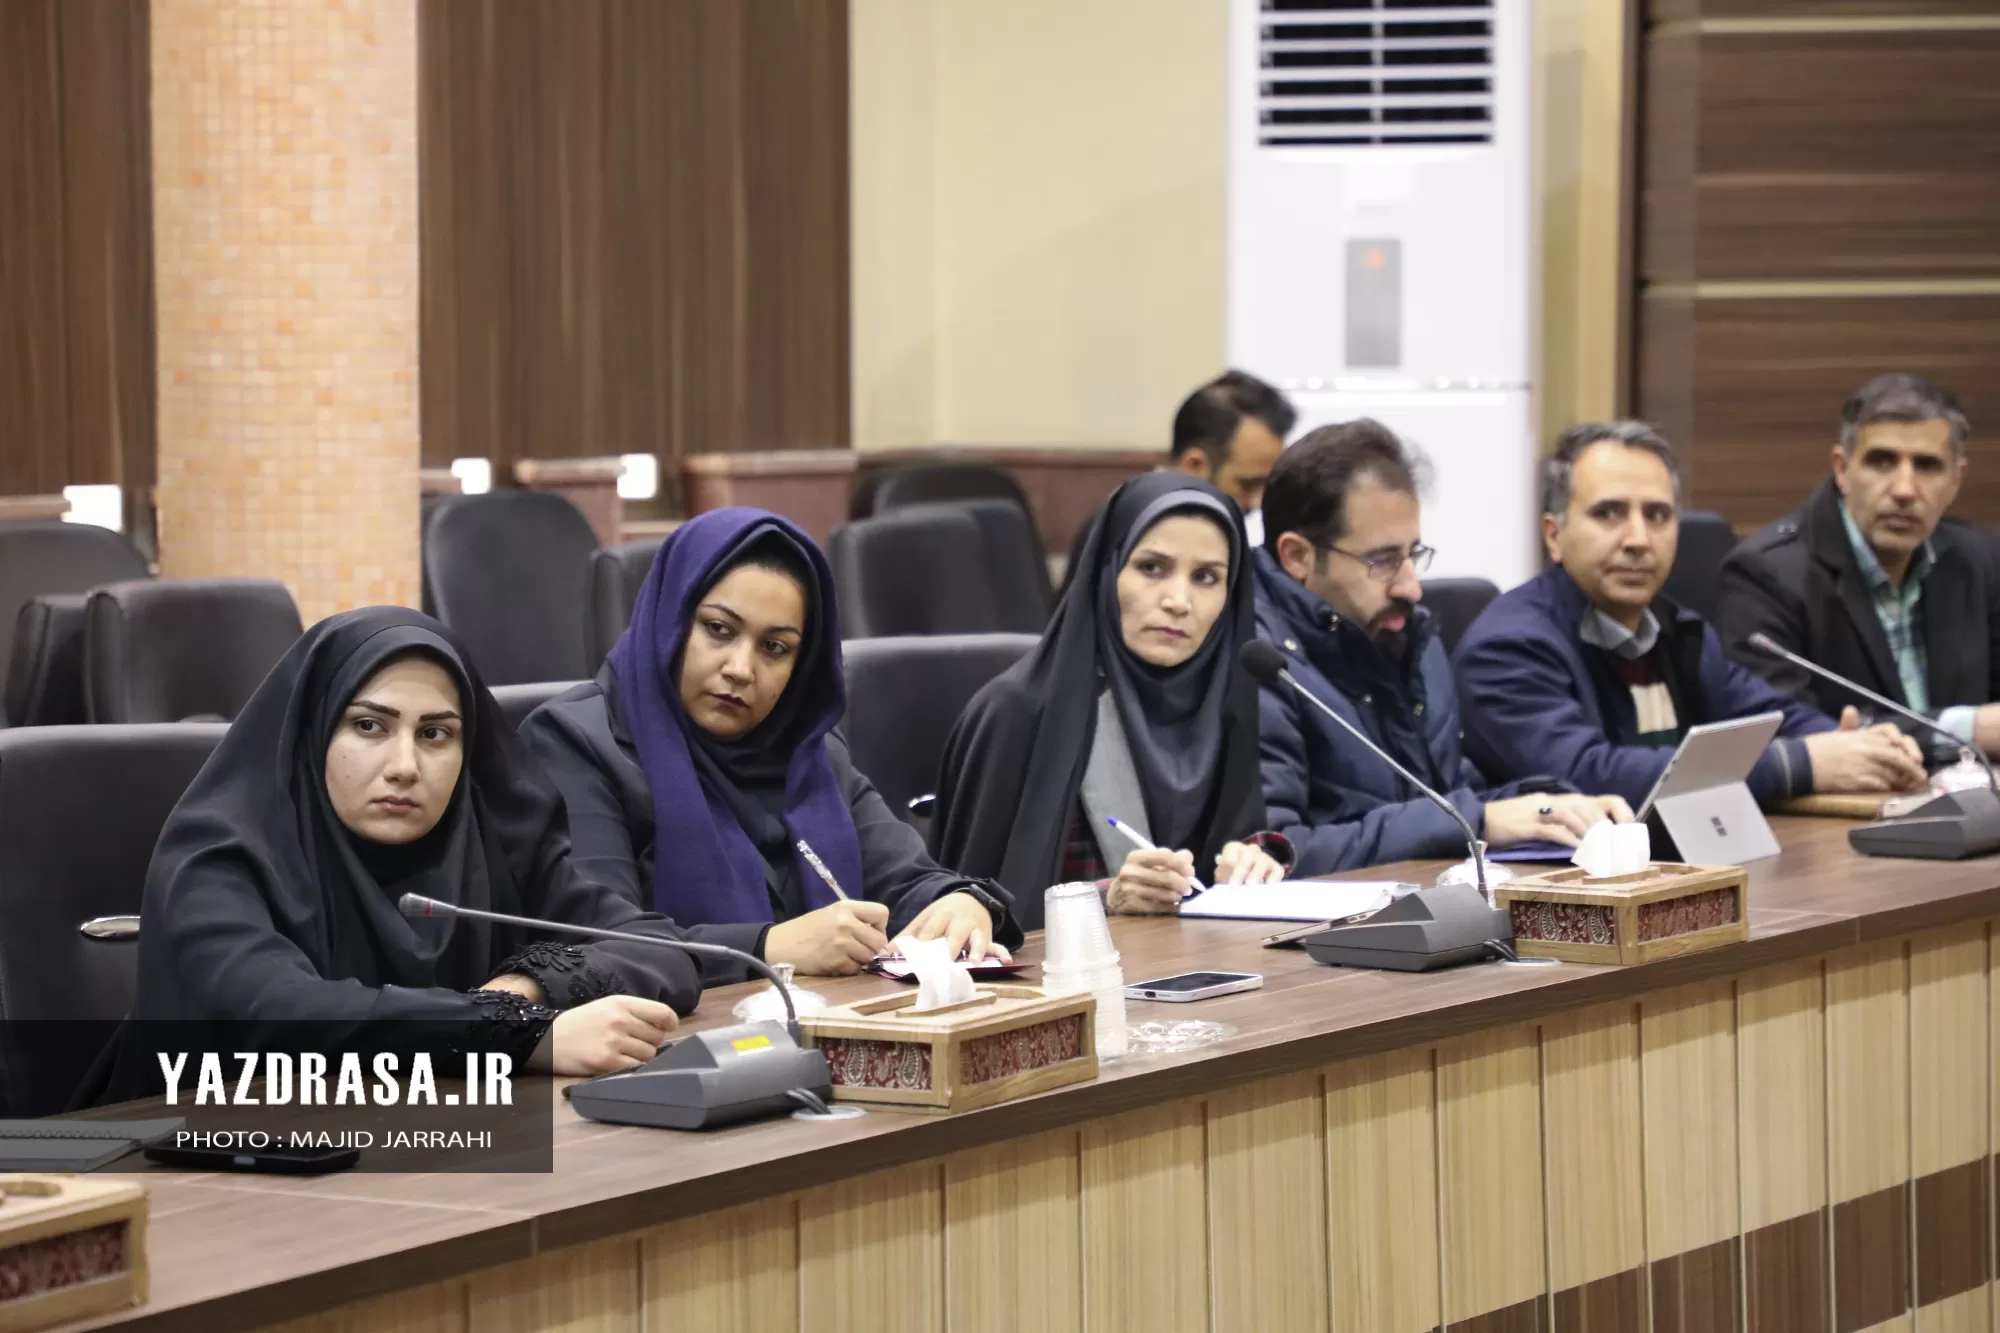 نشست اداره کار یزد با محوریت طرح فجرانه